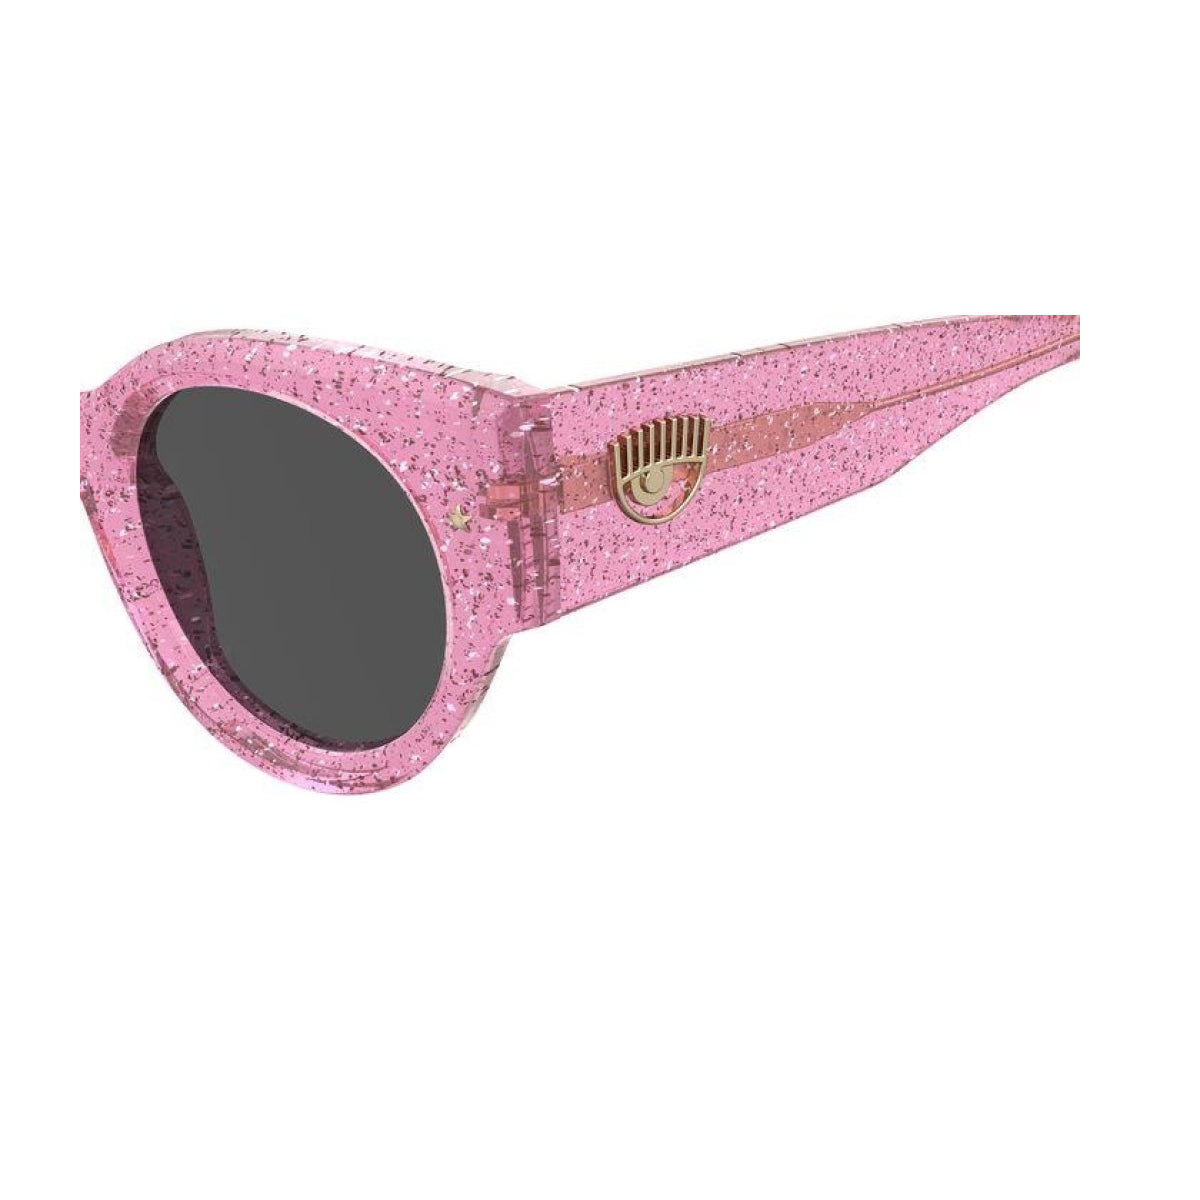 CF 7024/s W66/IR-Occhiali da sole-Chiara Ferragni-La collezione di occhiali di Chiara Ferragni rappresenta un'armoniosa fusione di stile e creatività. Questi occhiali, ideati dalla celebre influencer, sono curati nei minimi dettagli e caratterizzati da un design cool, chic e all'avanguardia. Questo modello presenta una montatura dalla forma tonda dalle linee cat-eye. Le aste decorate con l'oversized eyelike sono perfettamente equilibrate da una sofisticata stella in metallo sul frontale. - Dresso